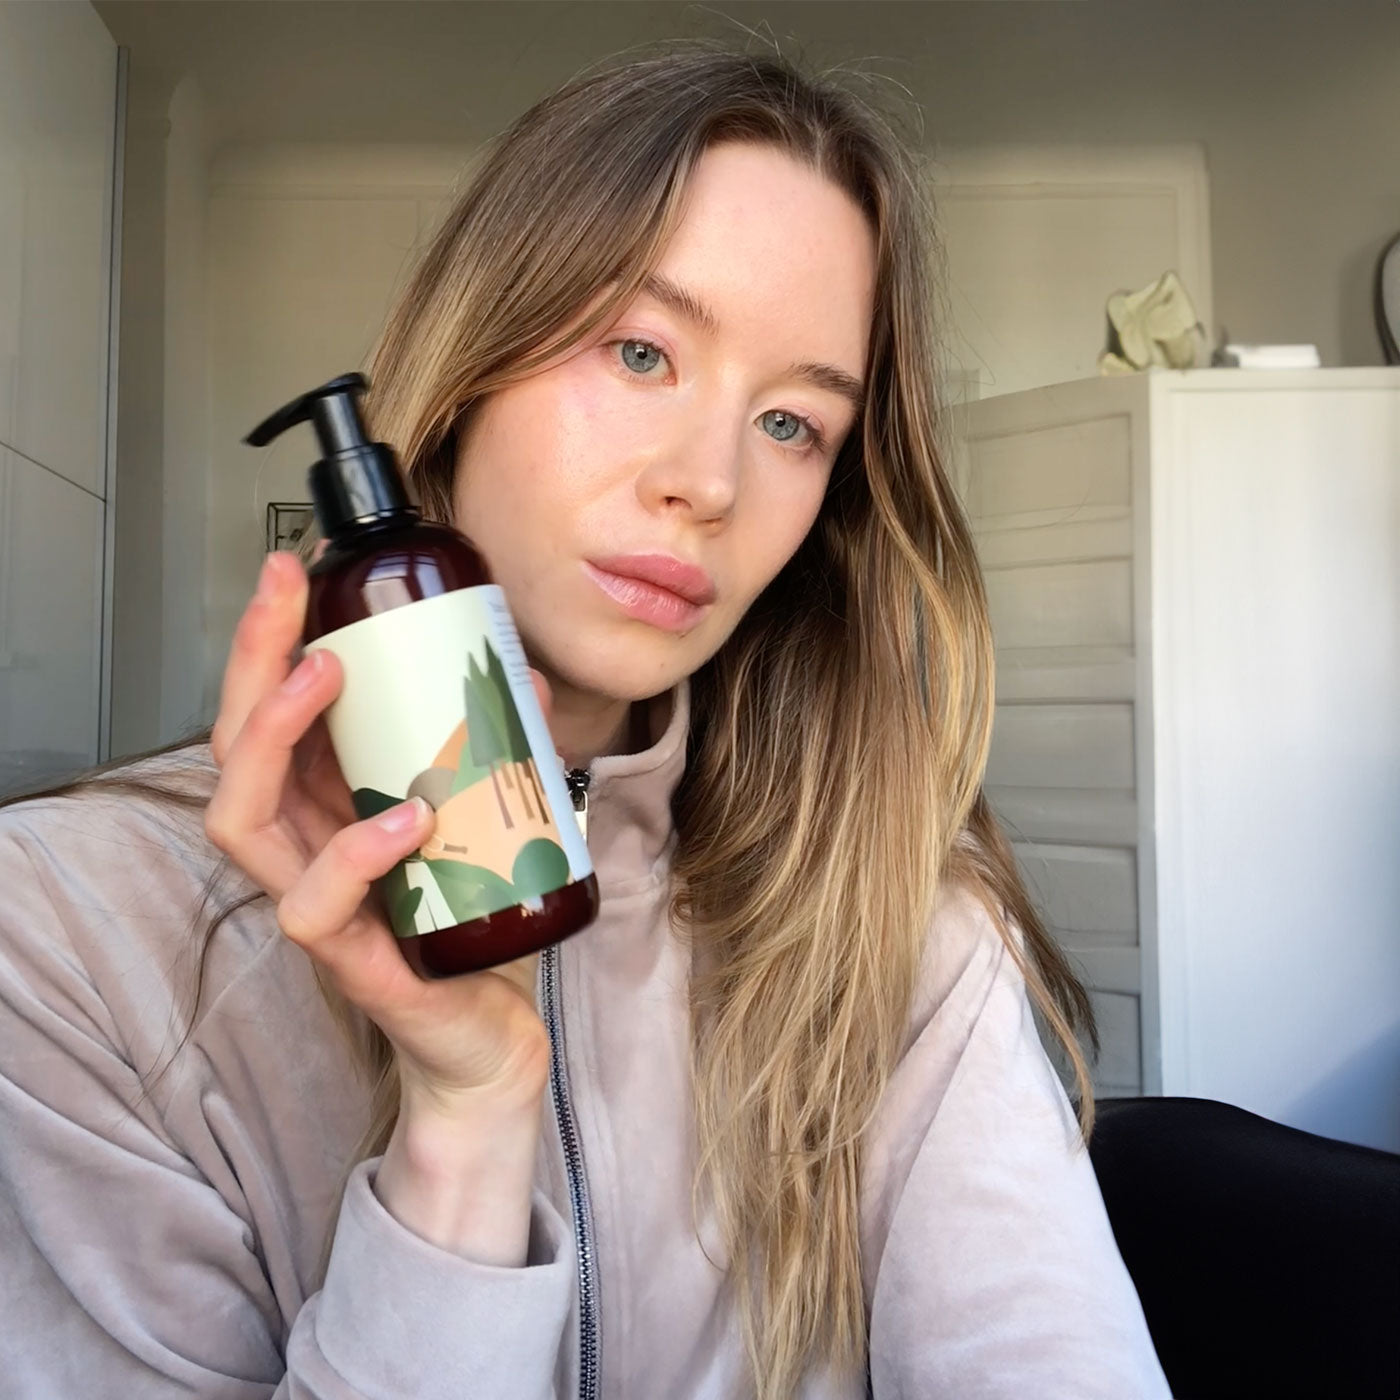 Load video: Sofia fortæller om Klint produkter